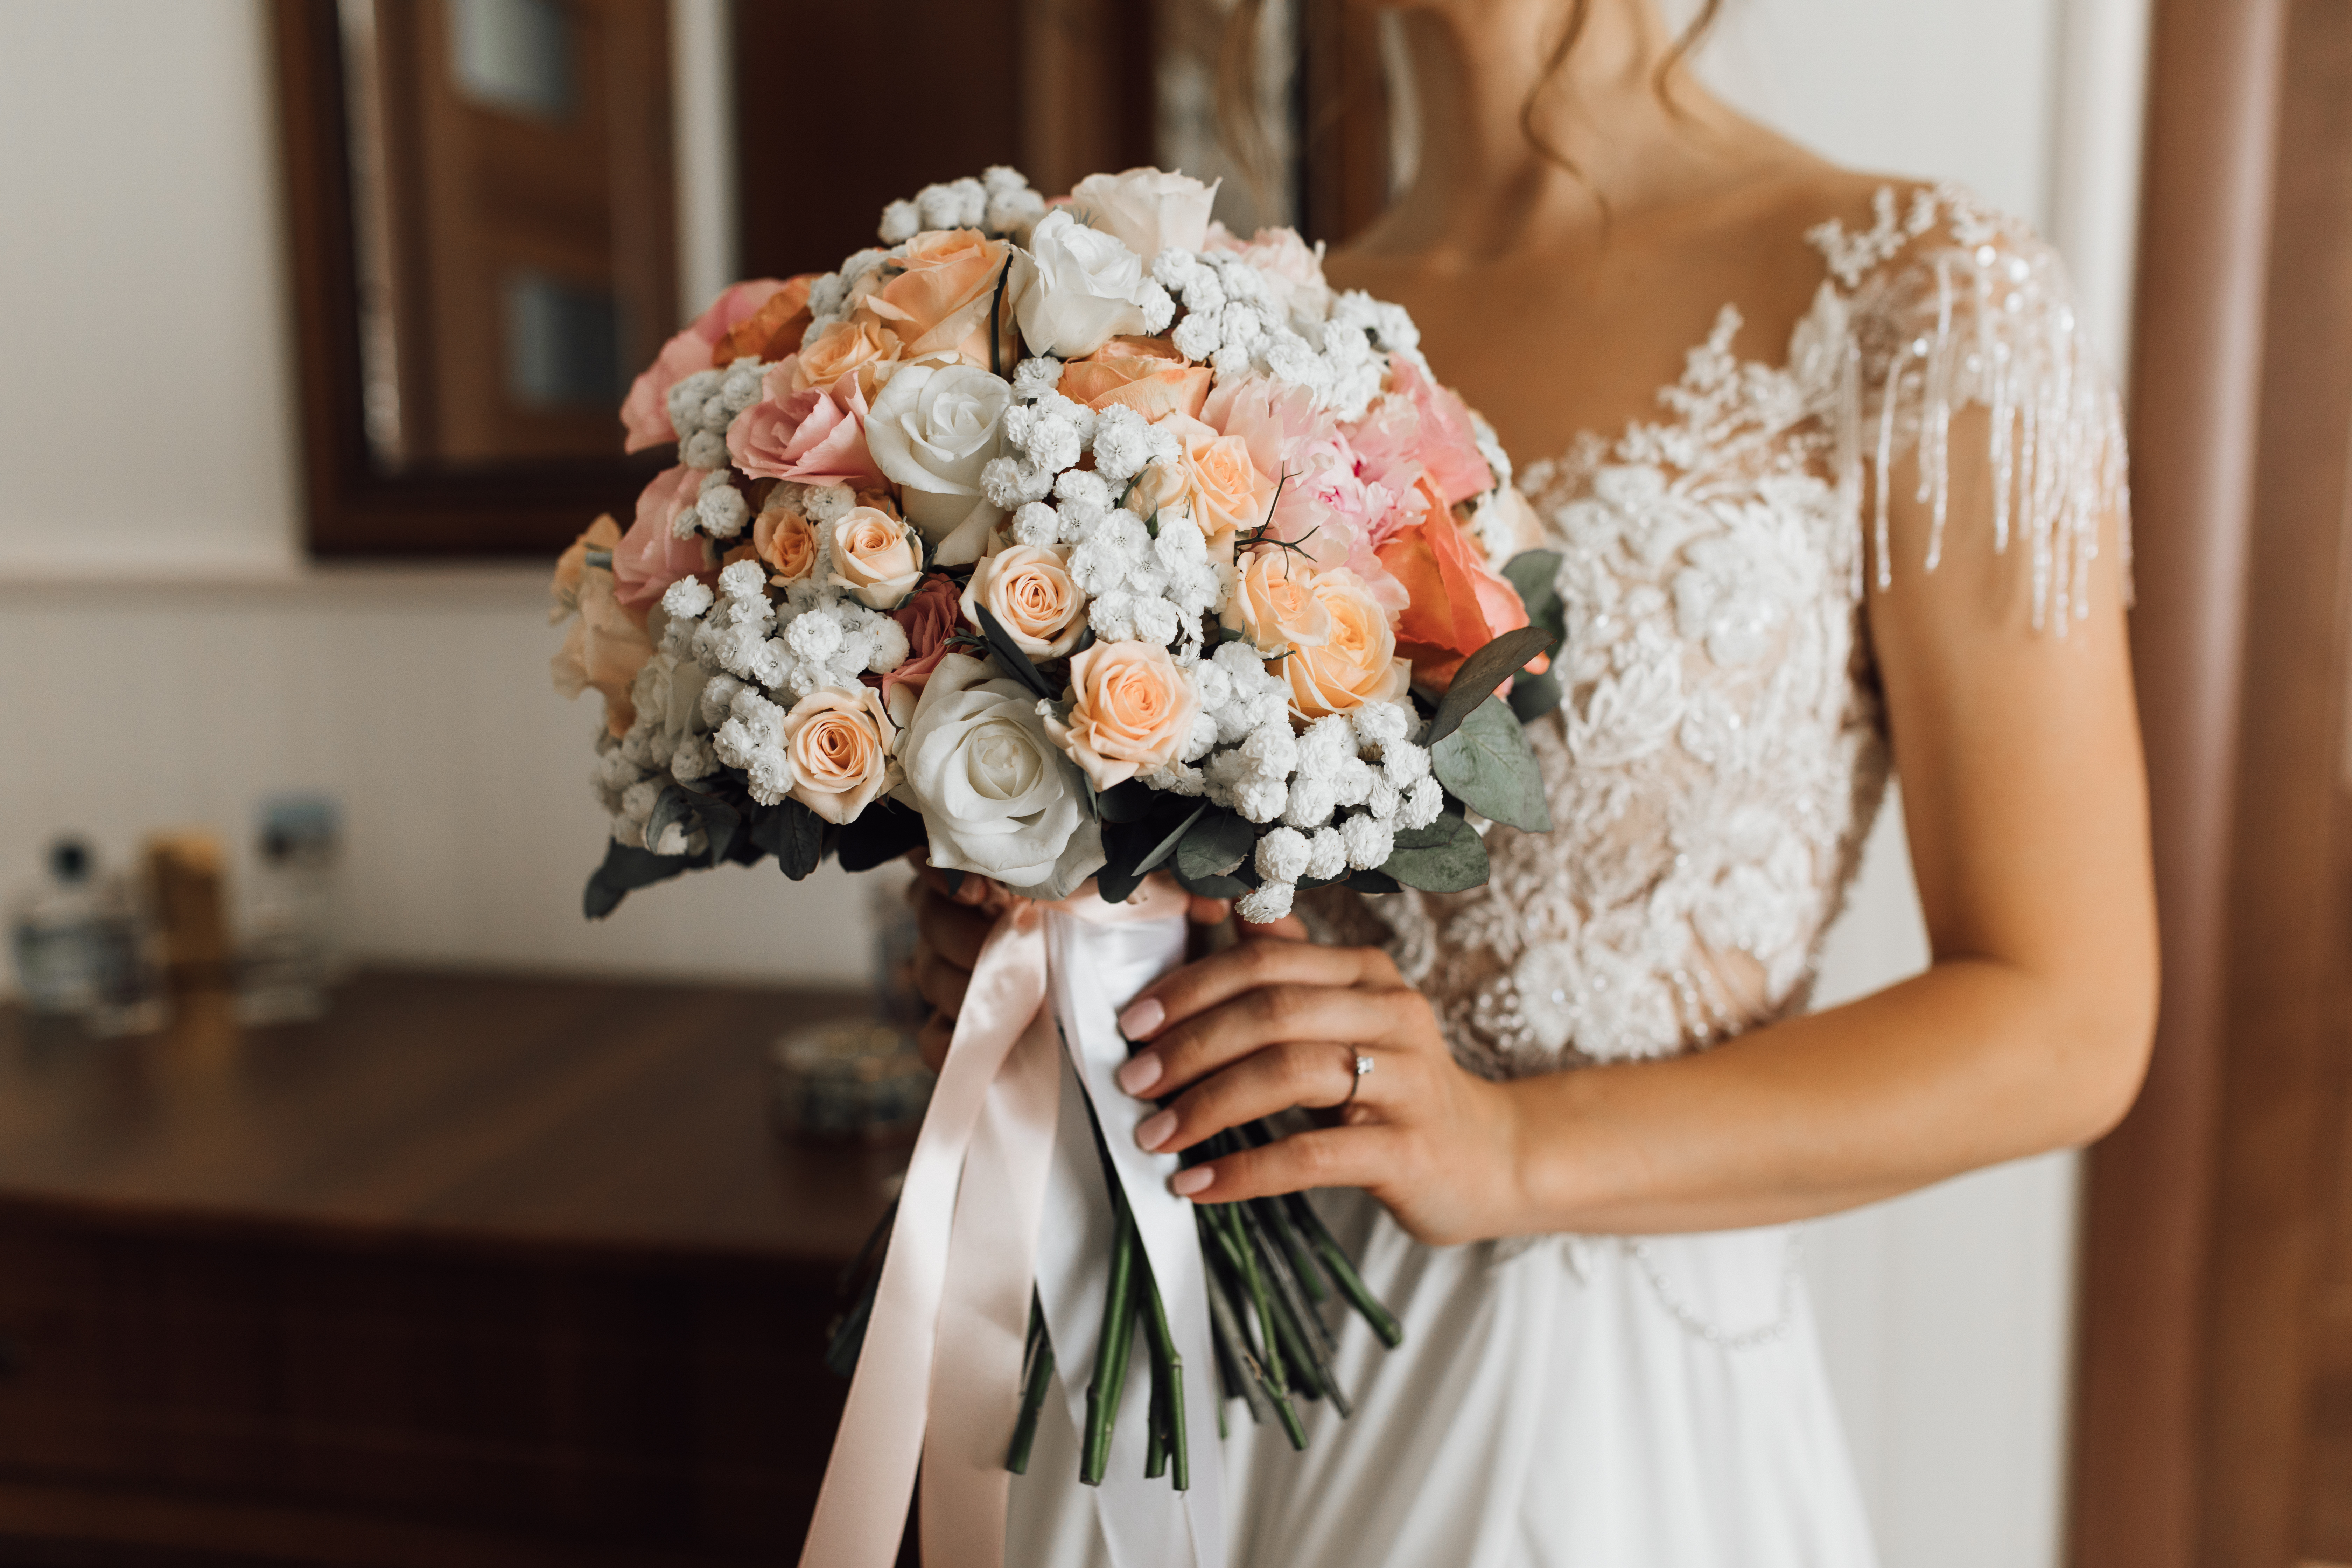 Bride holding a bouquet | Source: Freepik